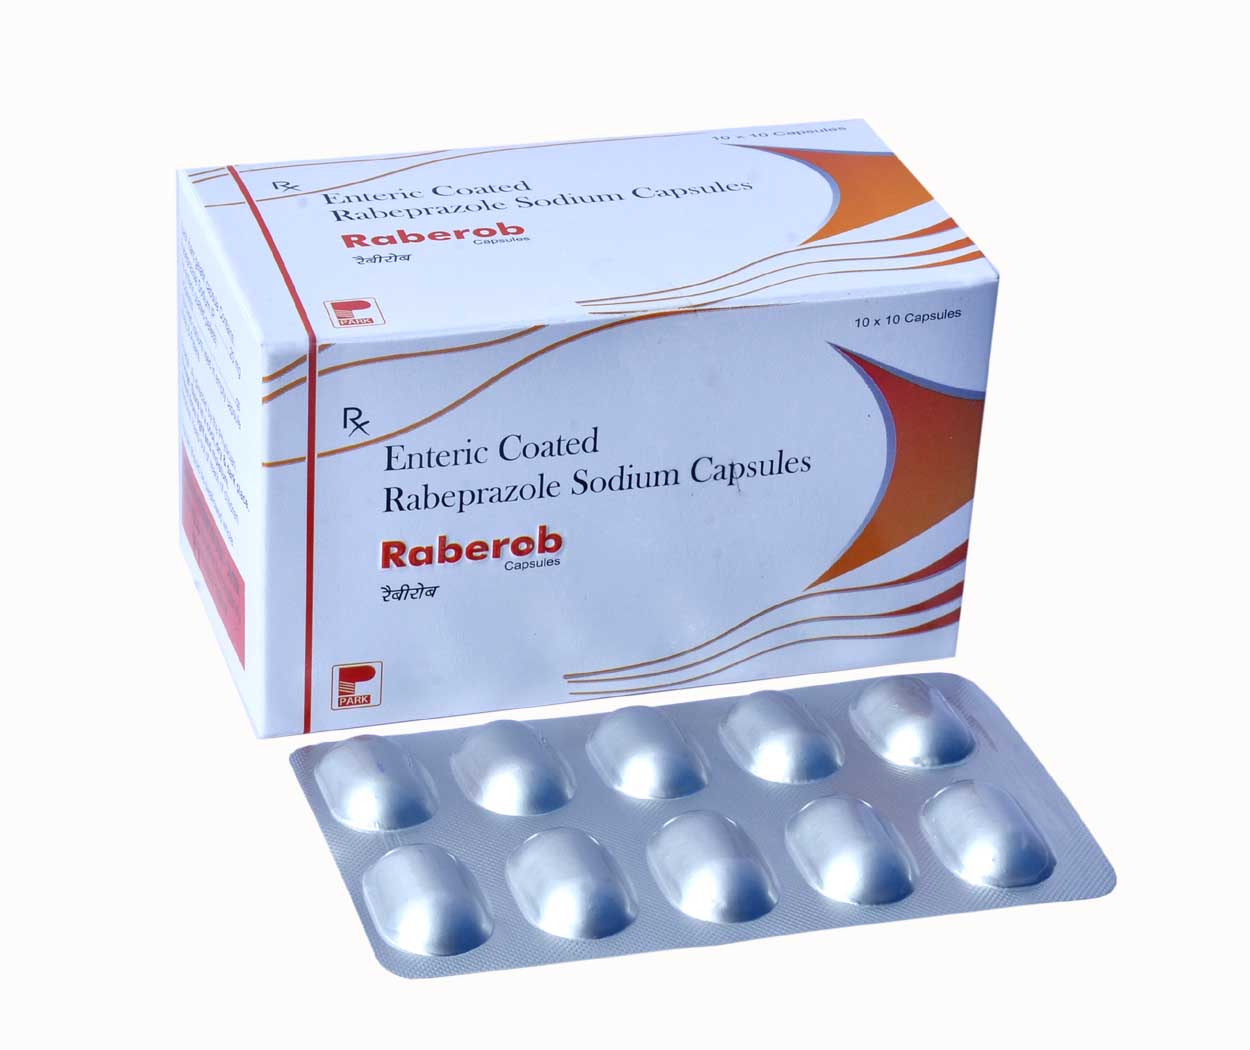 Product Name: Raberob, Compositions of Raberob are Enteric Coated Rabeprazole Sodium Capsules - Park Pharmaceuticals